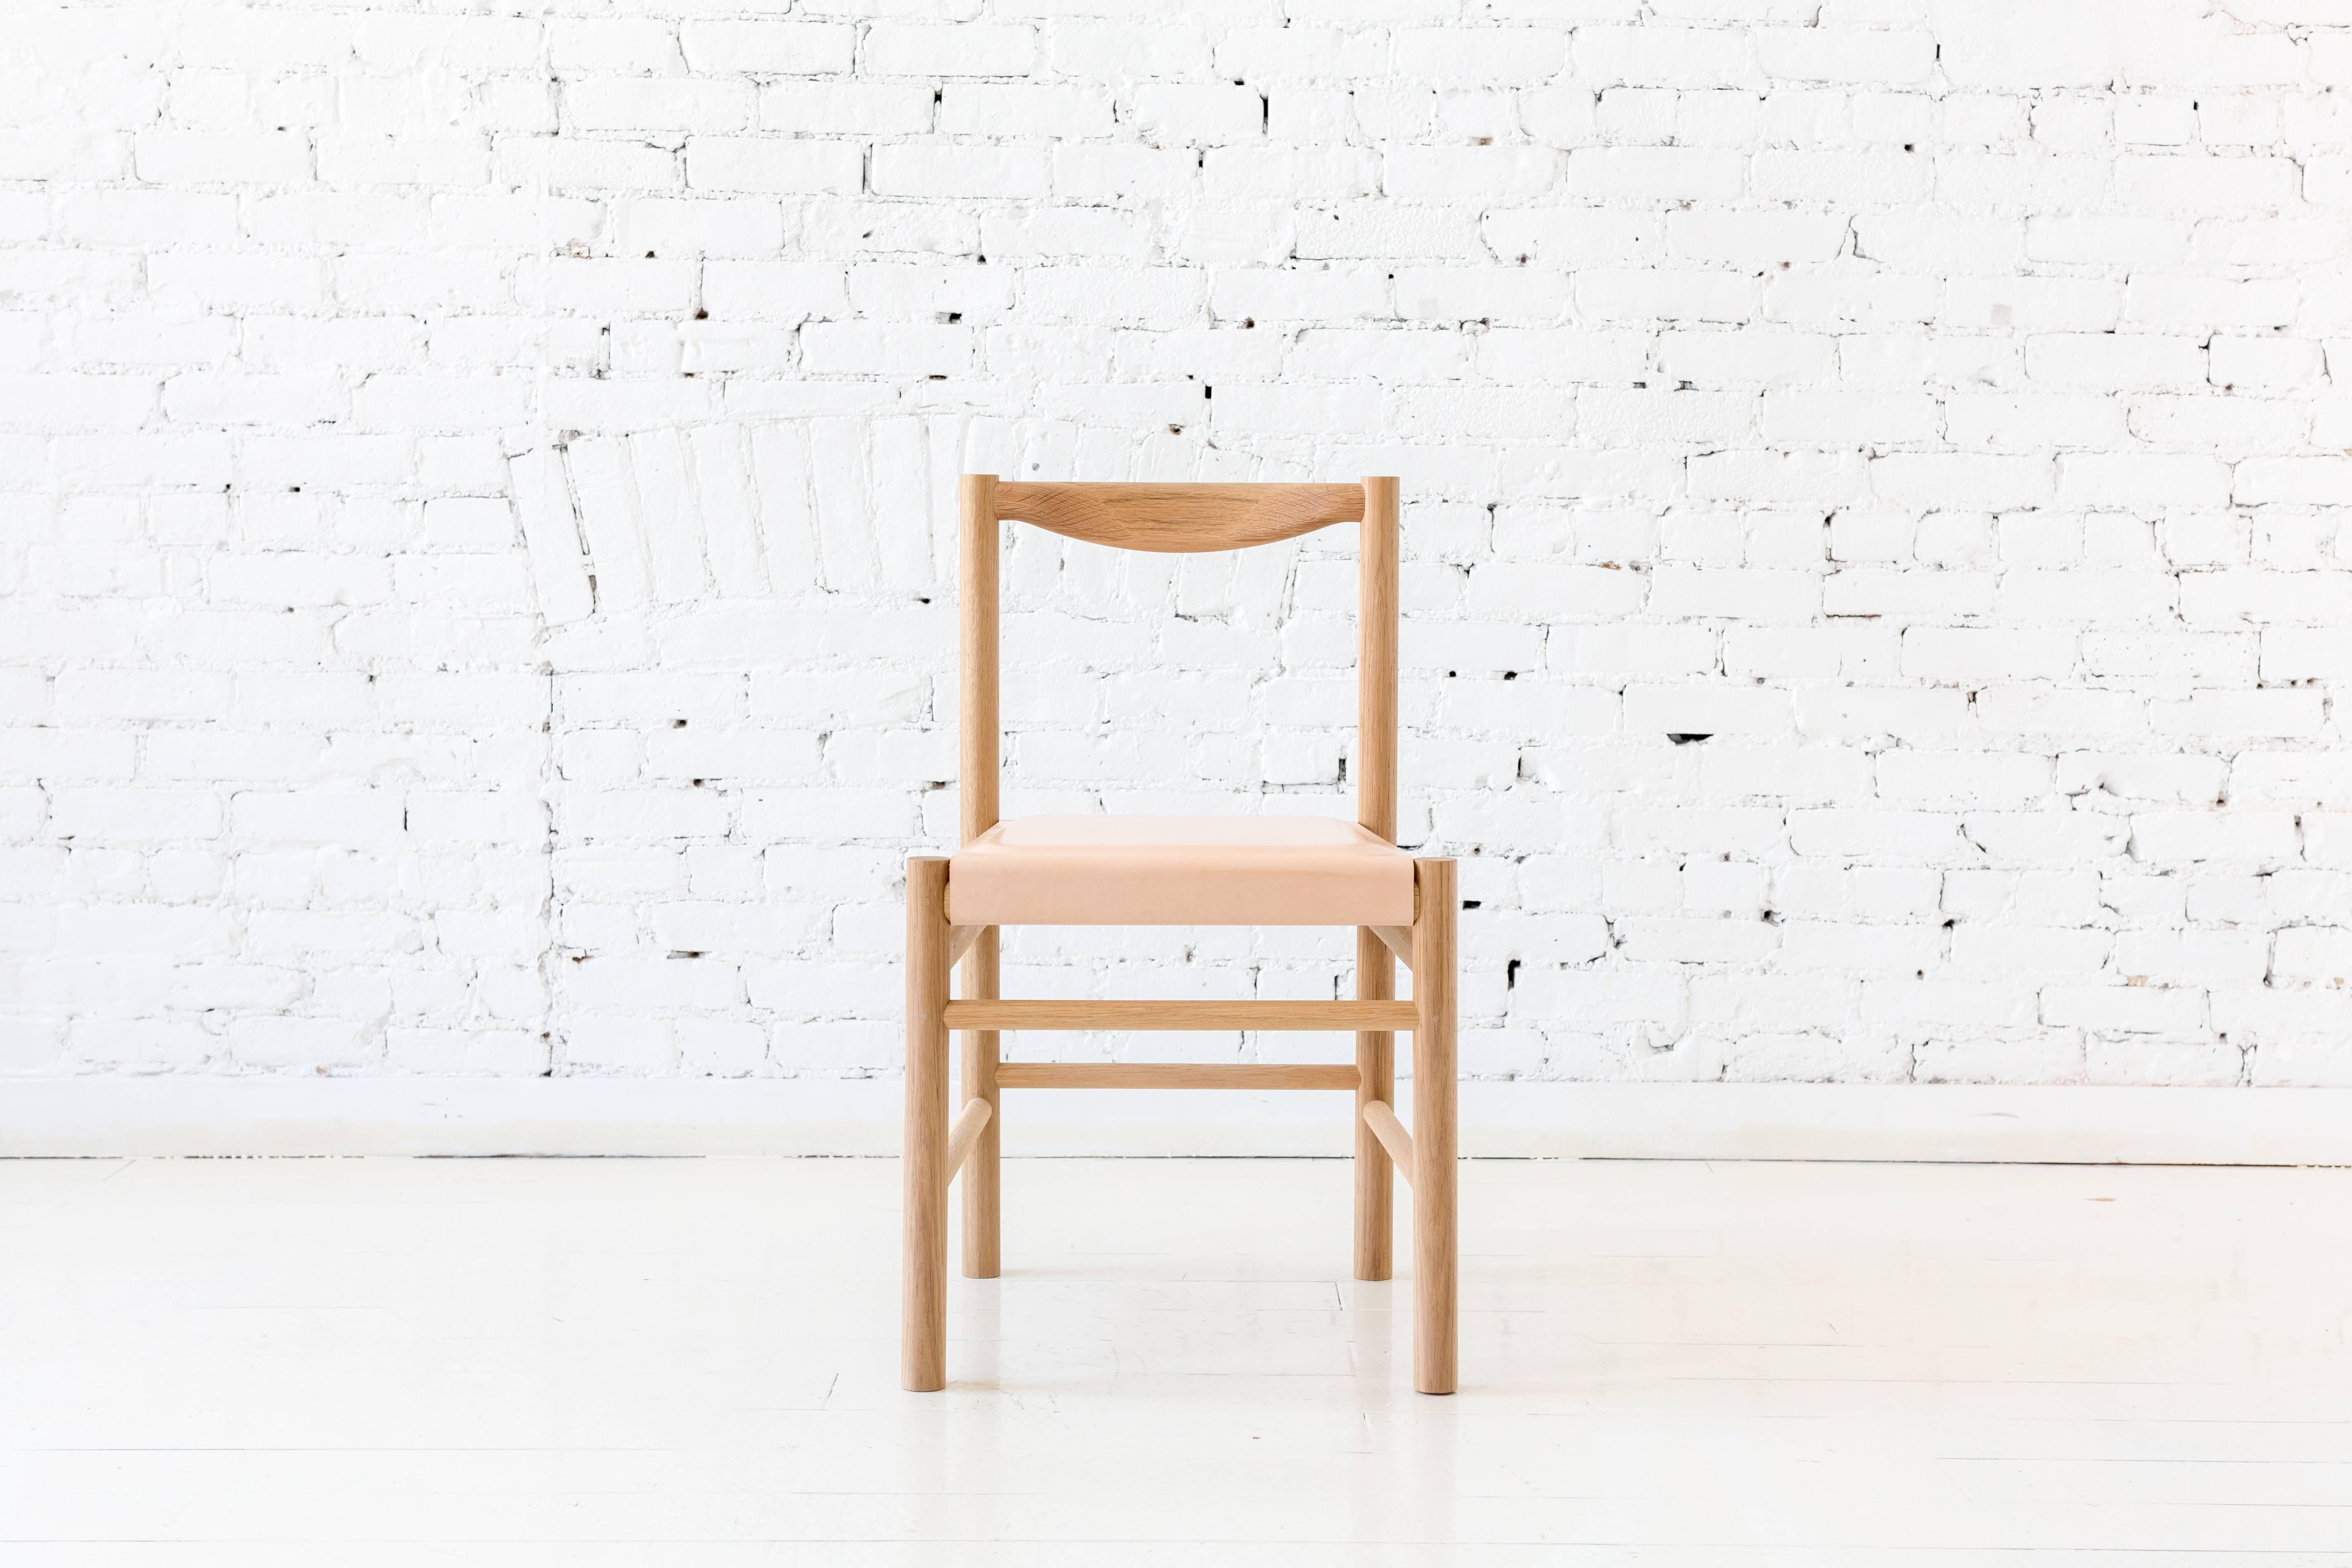 Chaise d'appoint en bois d'inspiration Shaker avec dossier confortable et profilé. Possibilité de choisir un plateau de siège en bois ou un plateau de siège avec un coussin à profil bas en cuir tanné végétal ou en shearling. La simplicité de cette